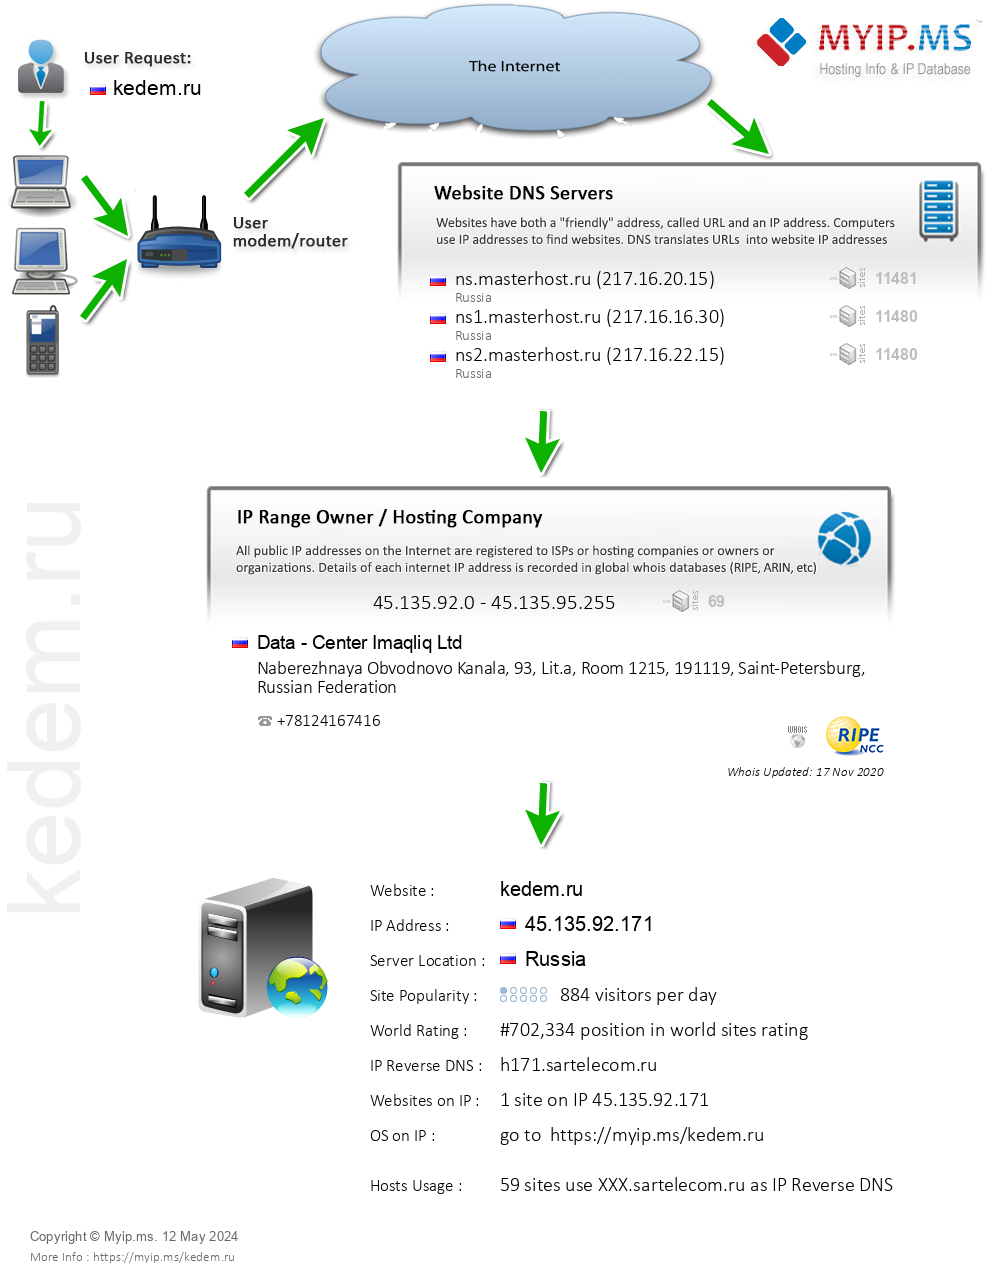 Kedem.ru - Website Hosting Visual IP Diagram